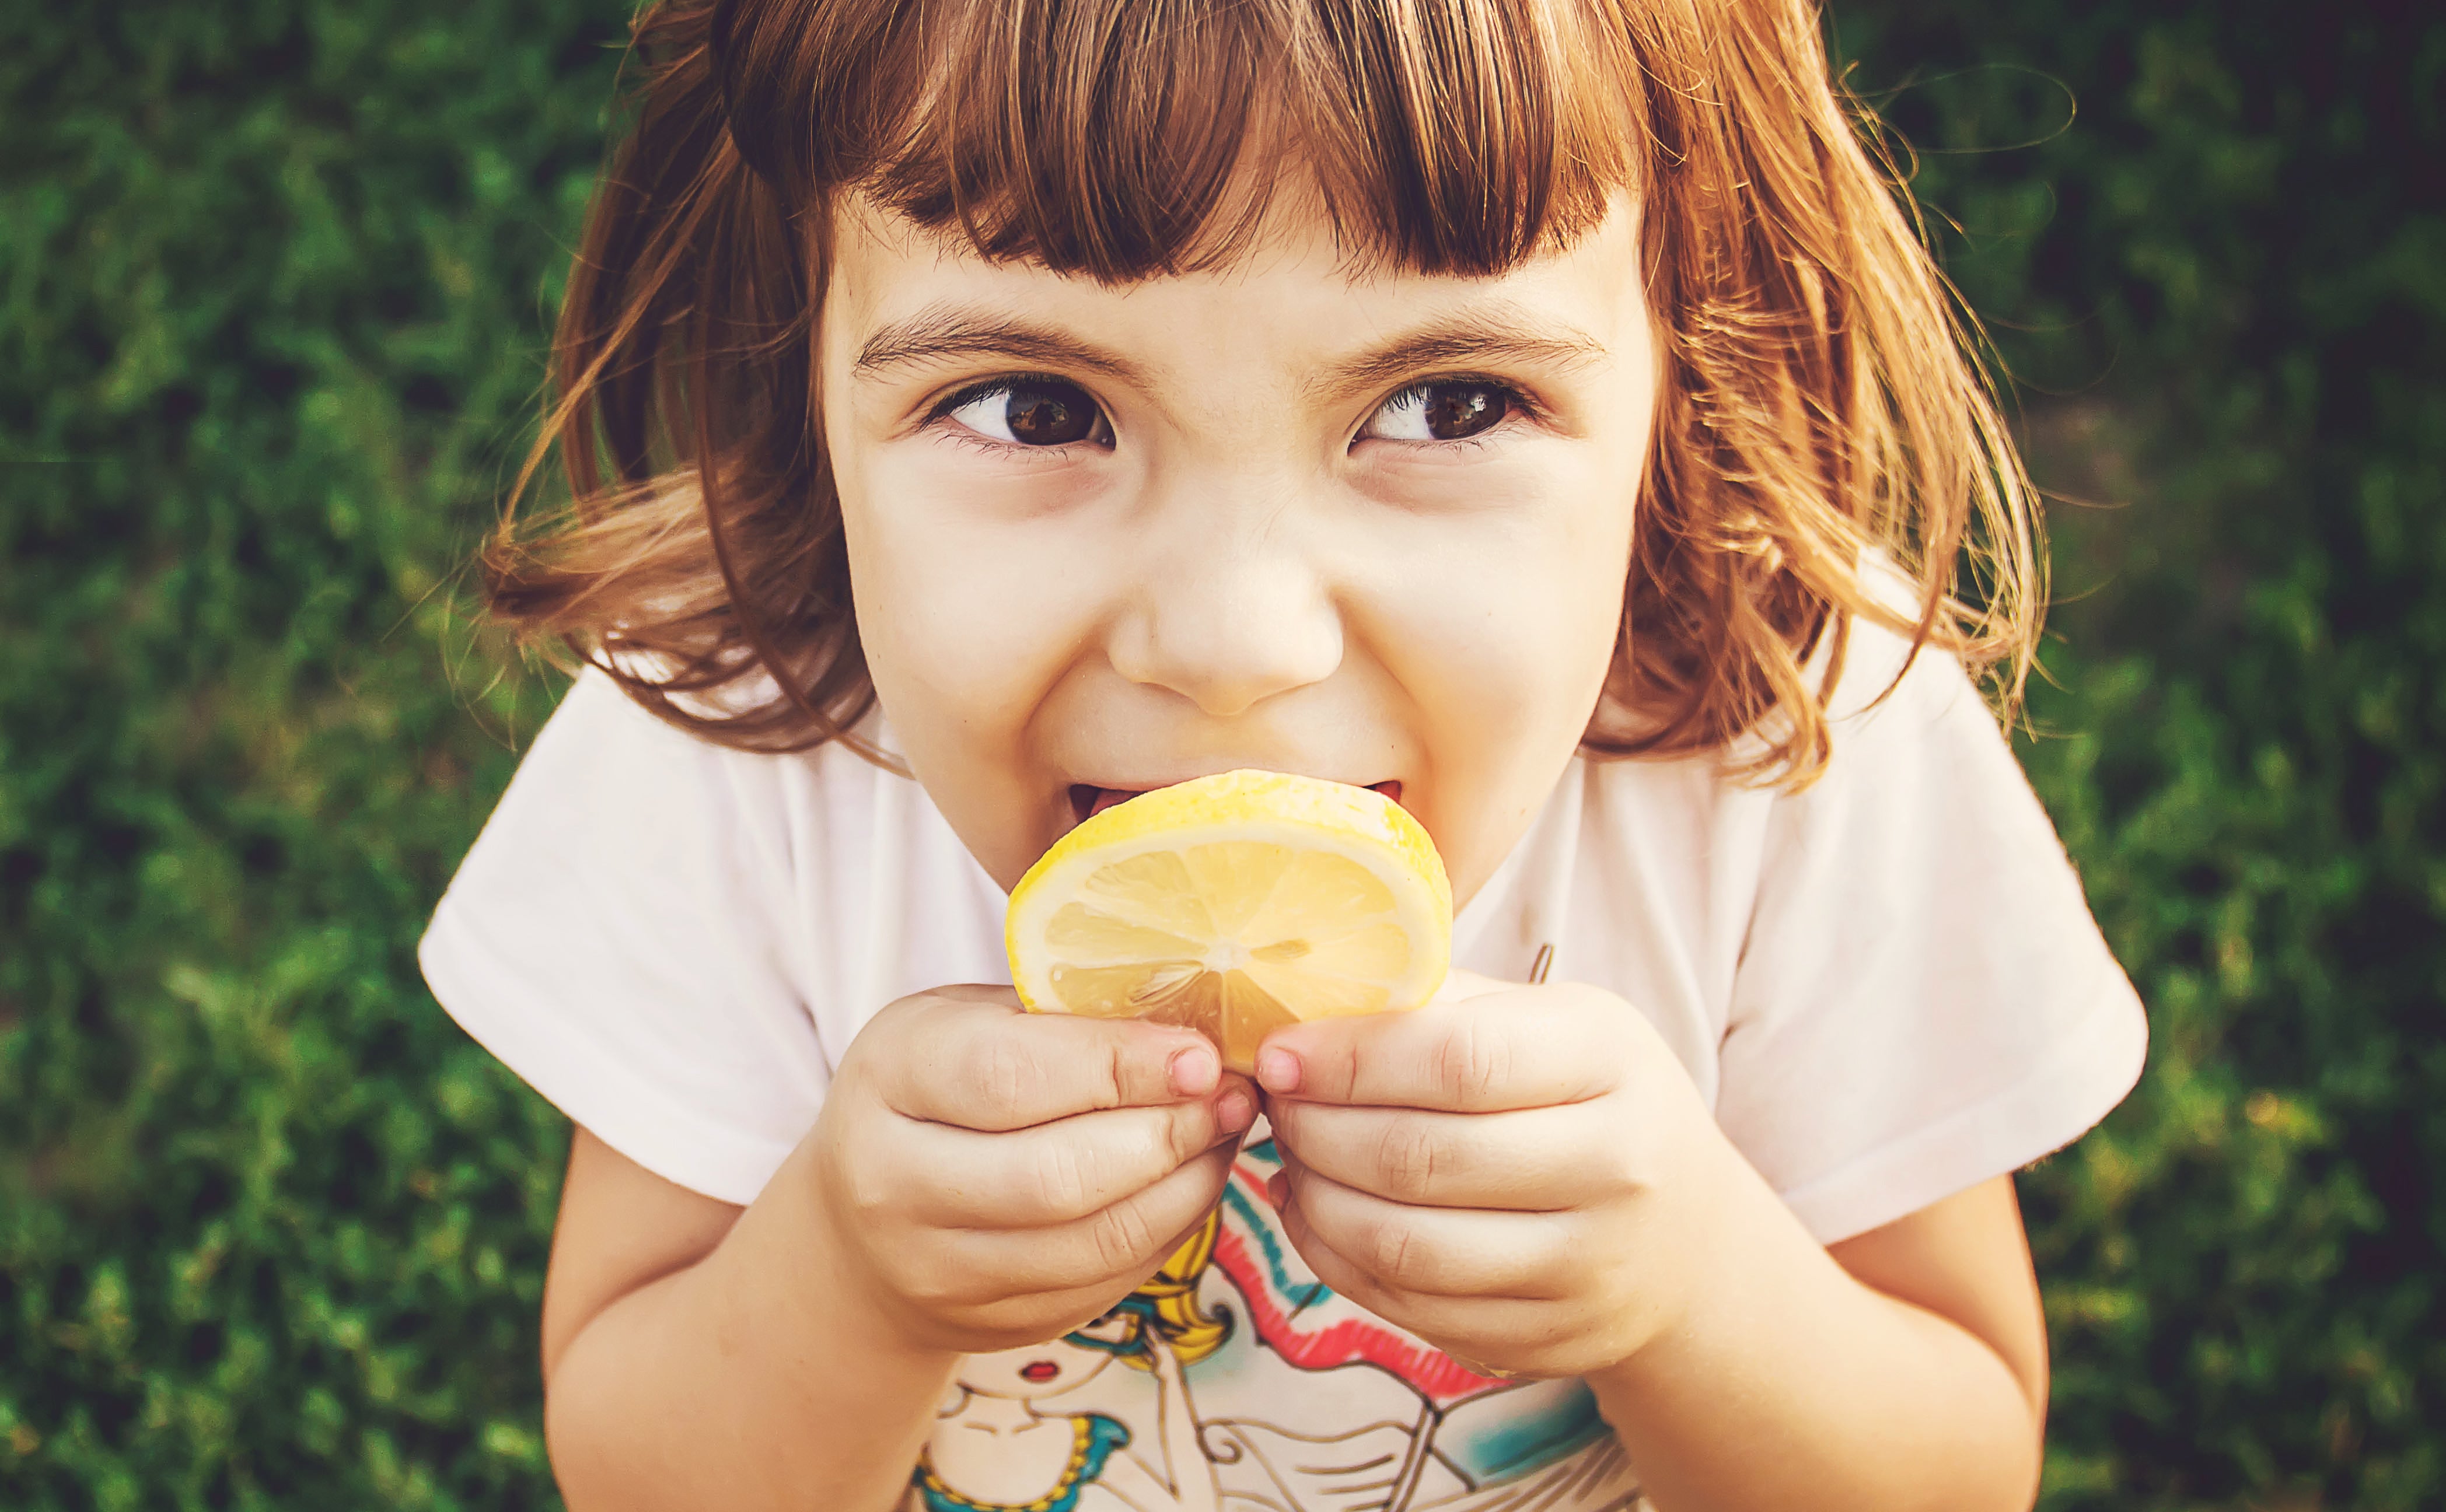 Young girl eating a lemon